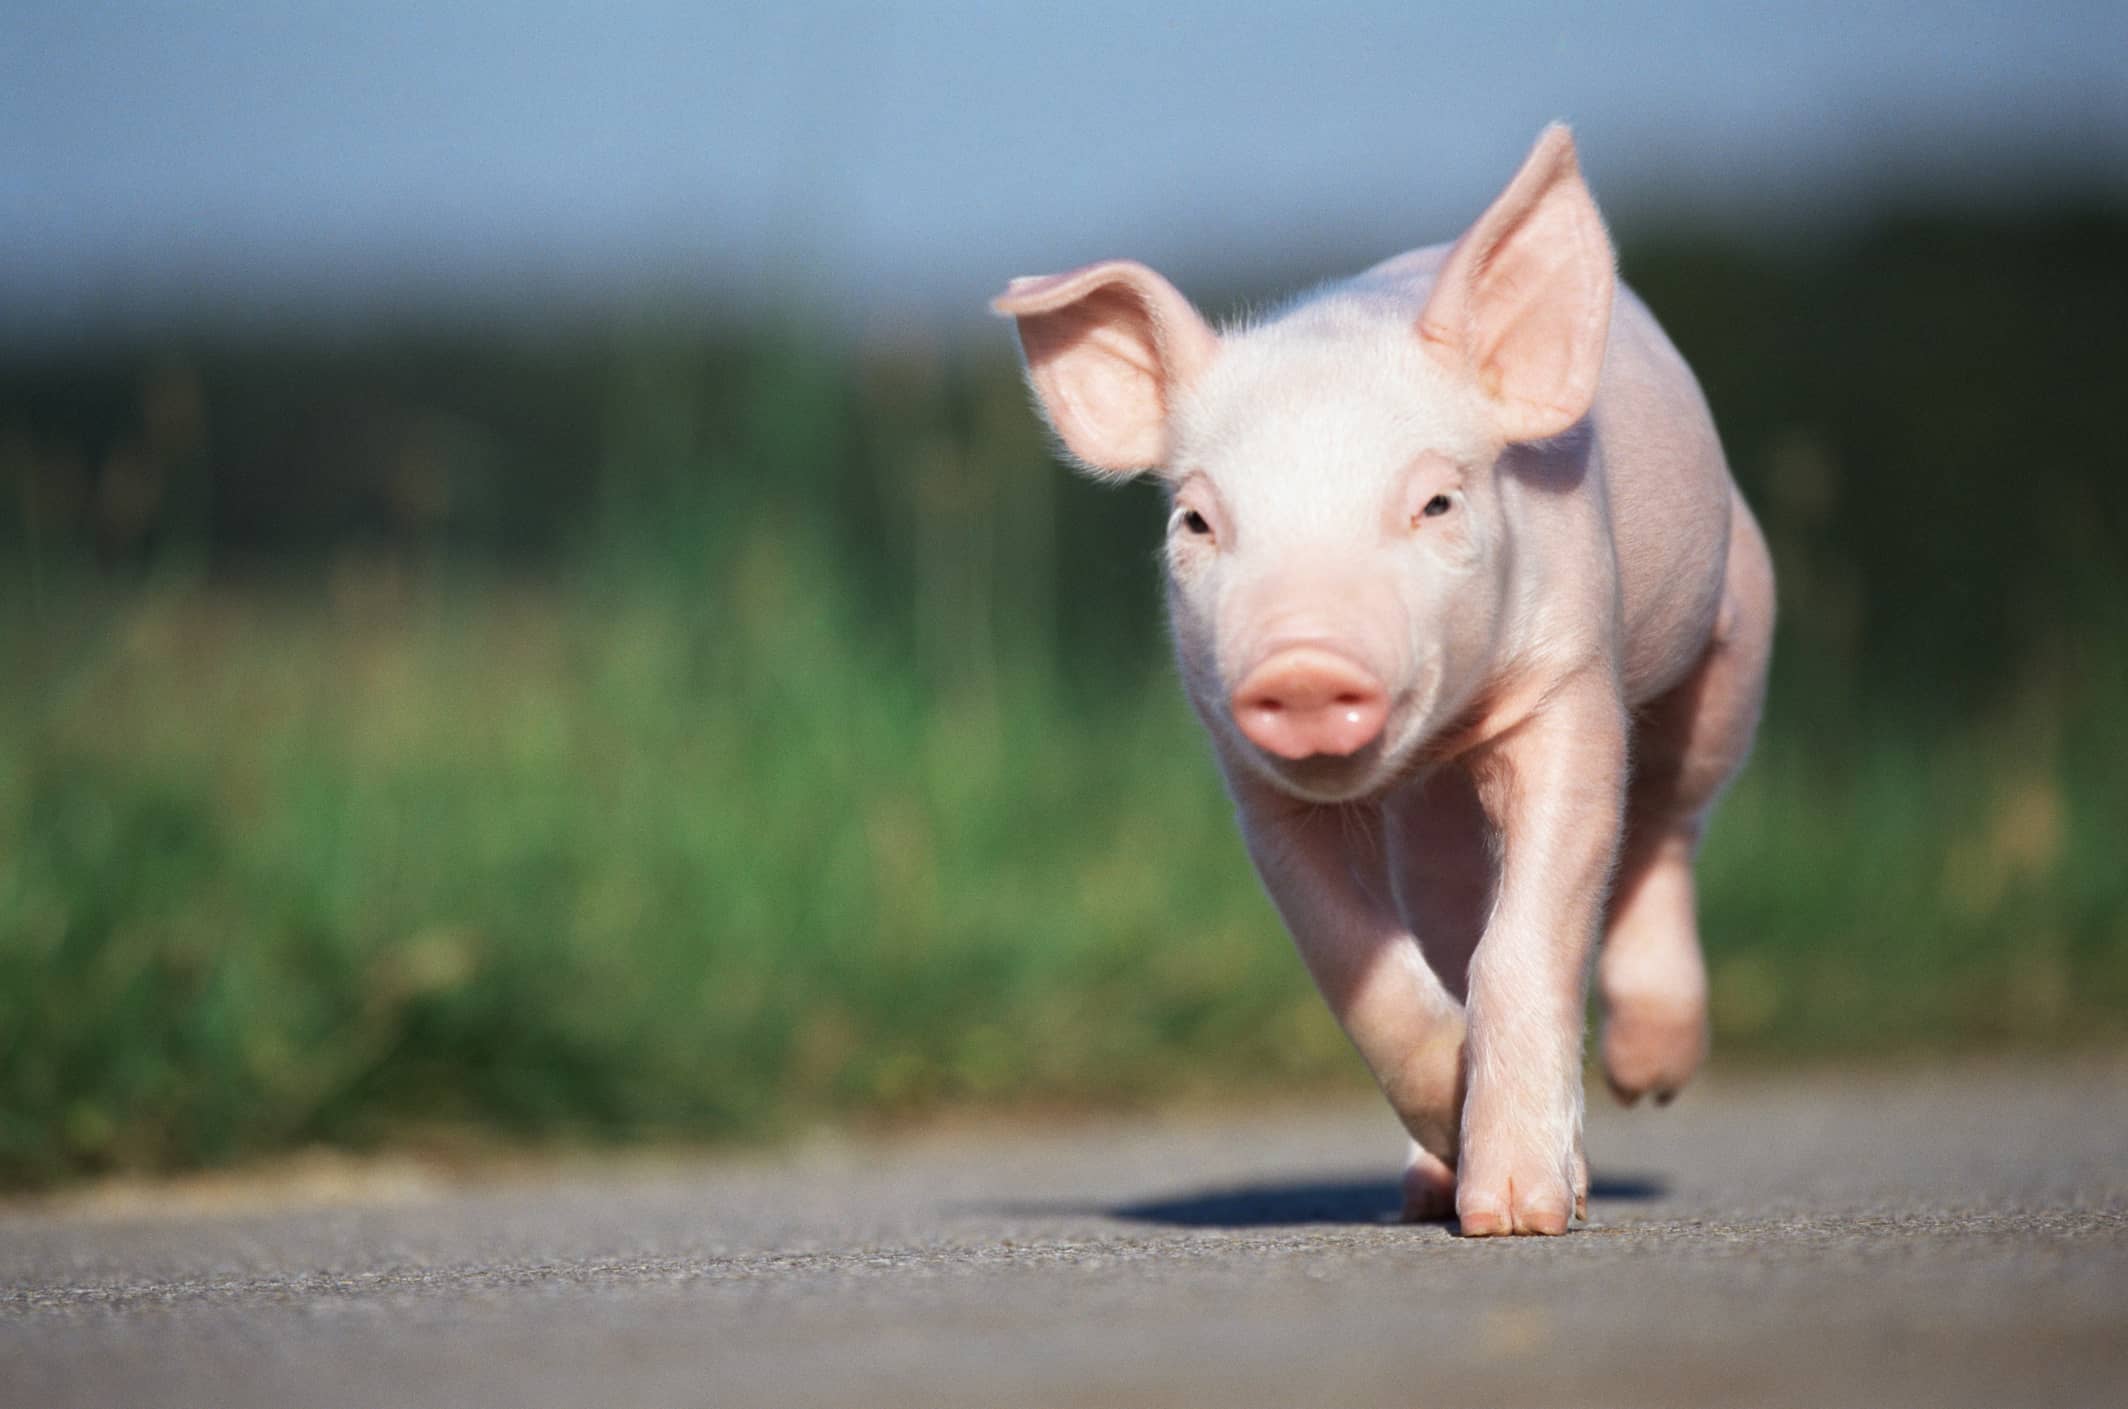 piglet-running-along-road